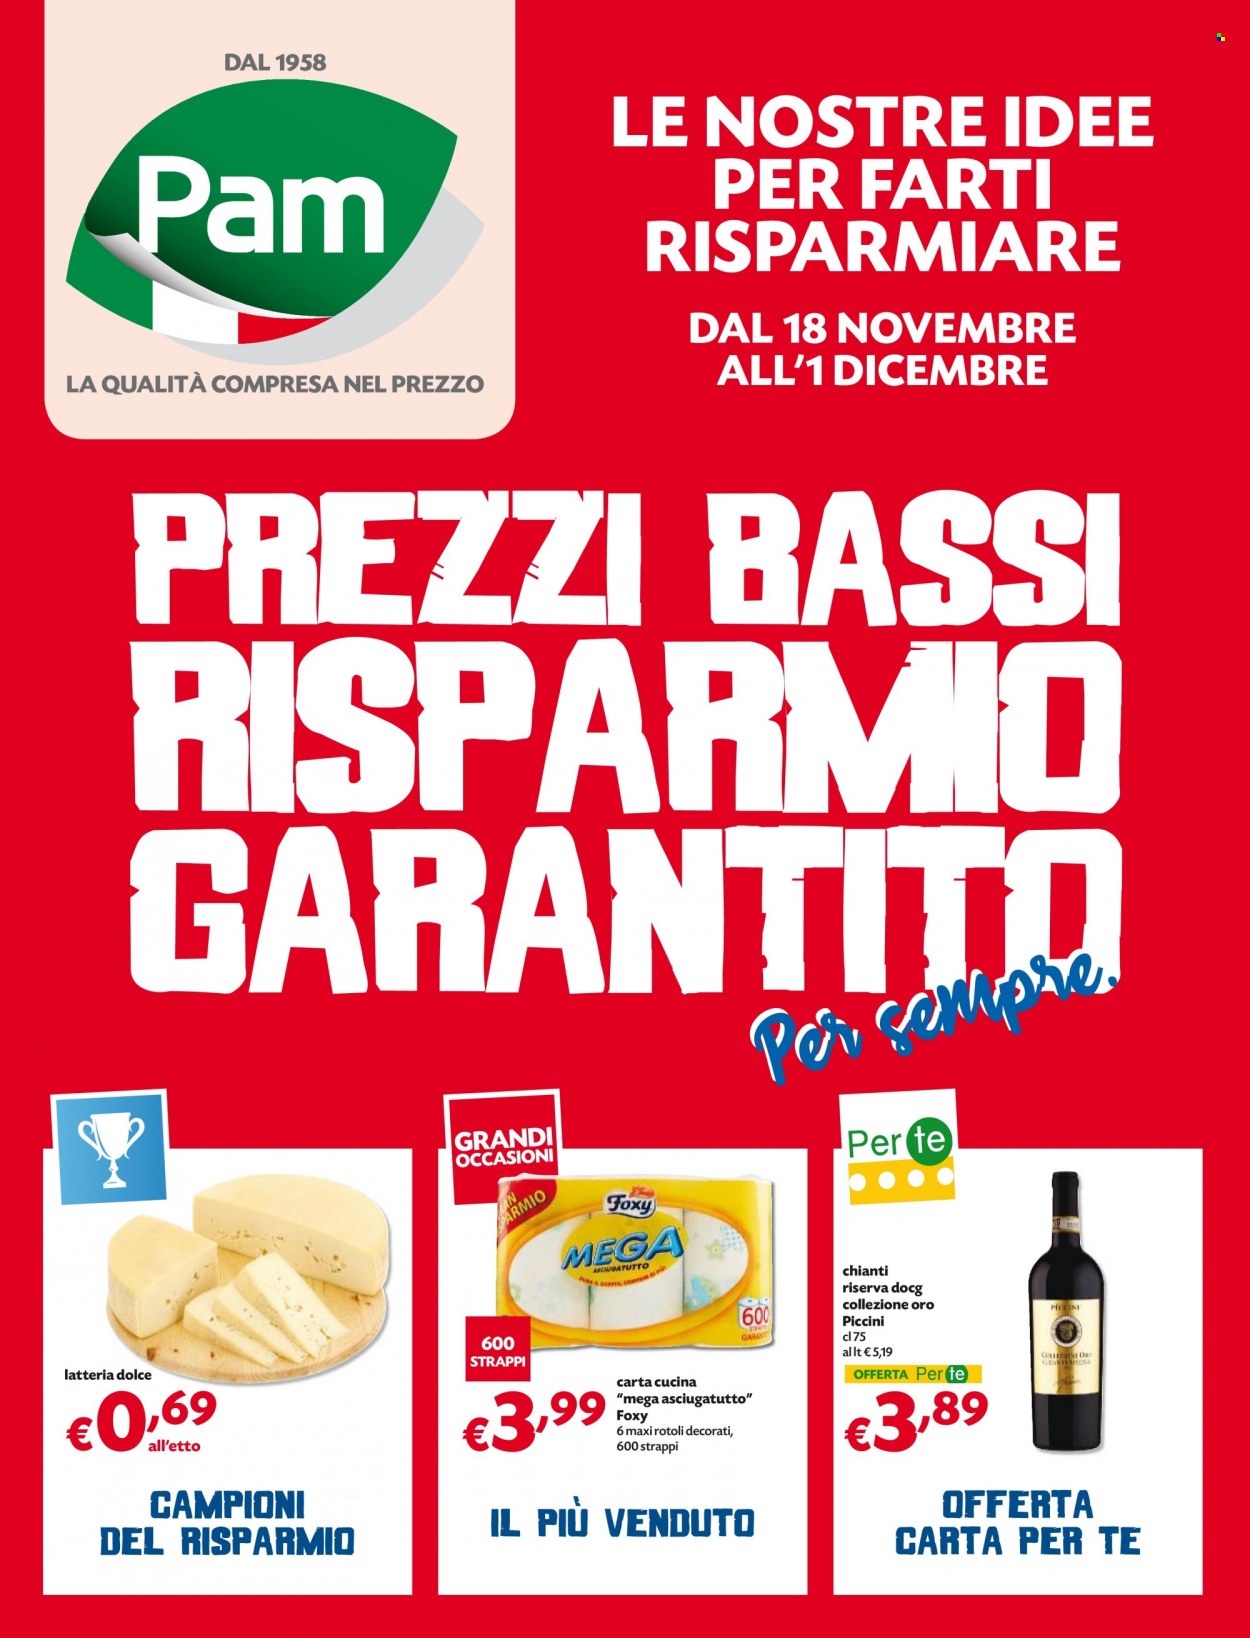 thumbnail - Volantino Pam Panorama - 18/11/2021 - 1/12/2021 - Prodotti in offerta - vino rosso, Chianti, vino, carta cucina, Foxy. Pagina 1.